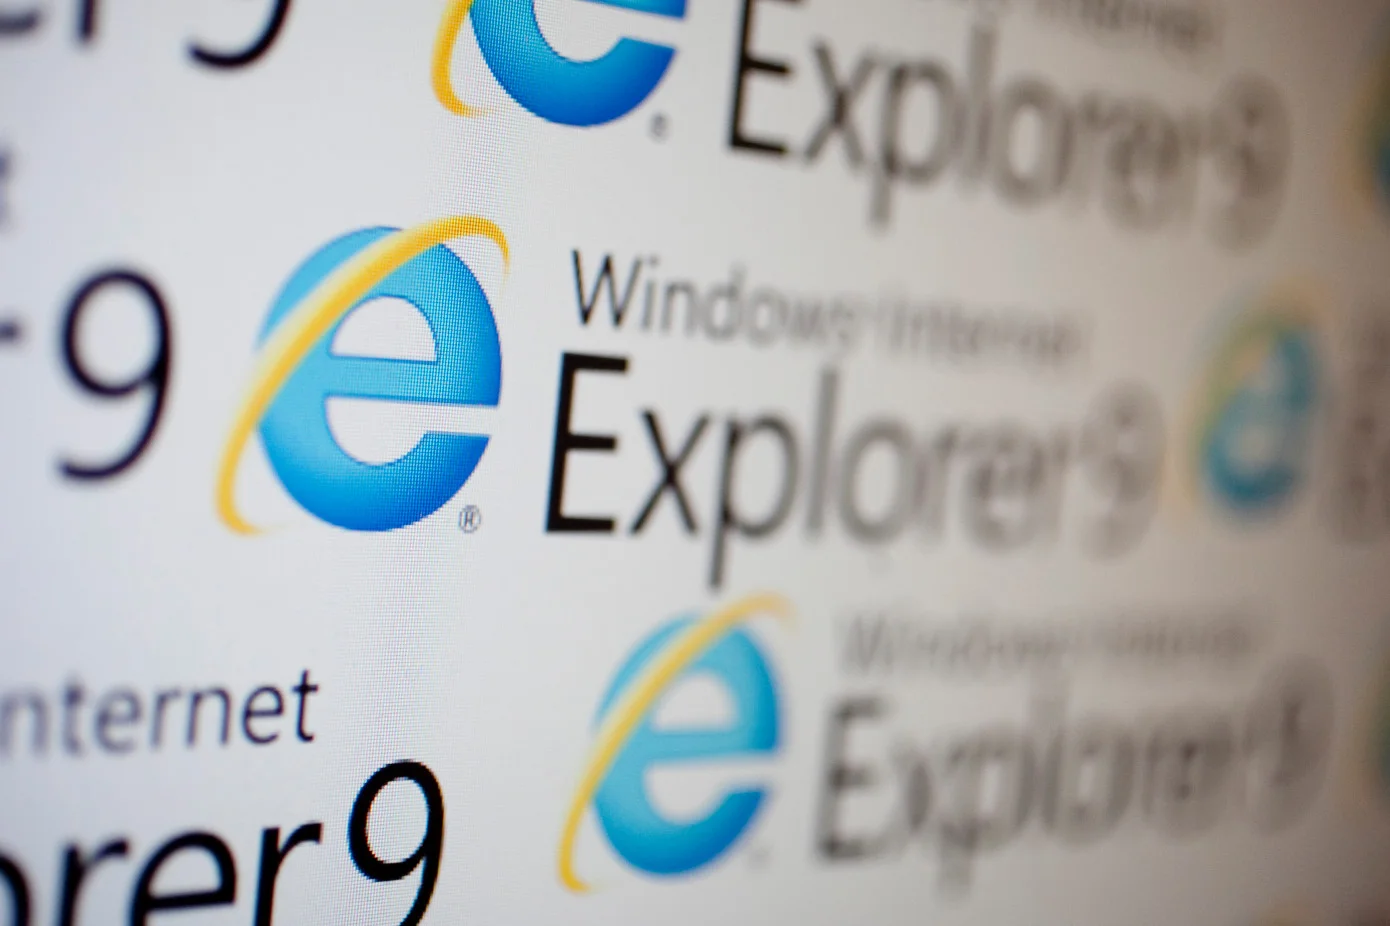 В Internet Explorer найдена дыра в безопасности. Microsoft знает о проблеме, но ничего не делает - фото 1